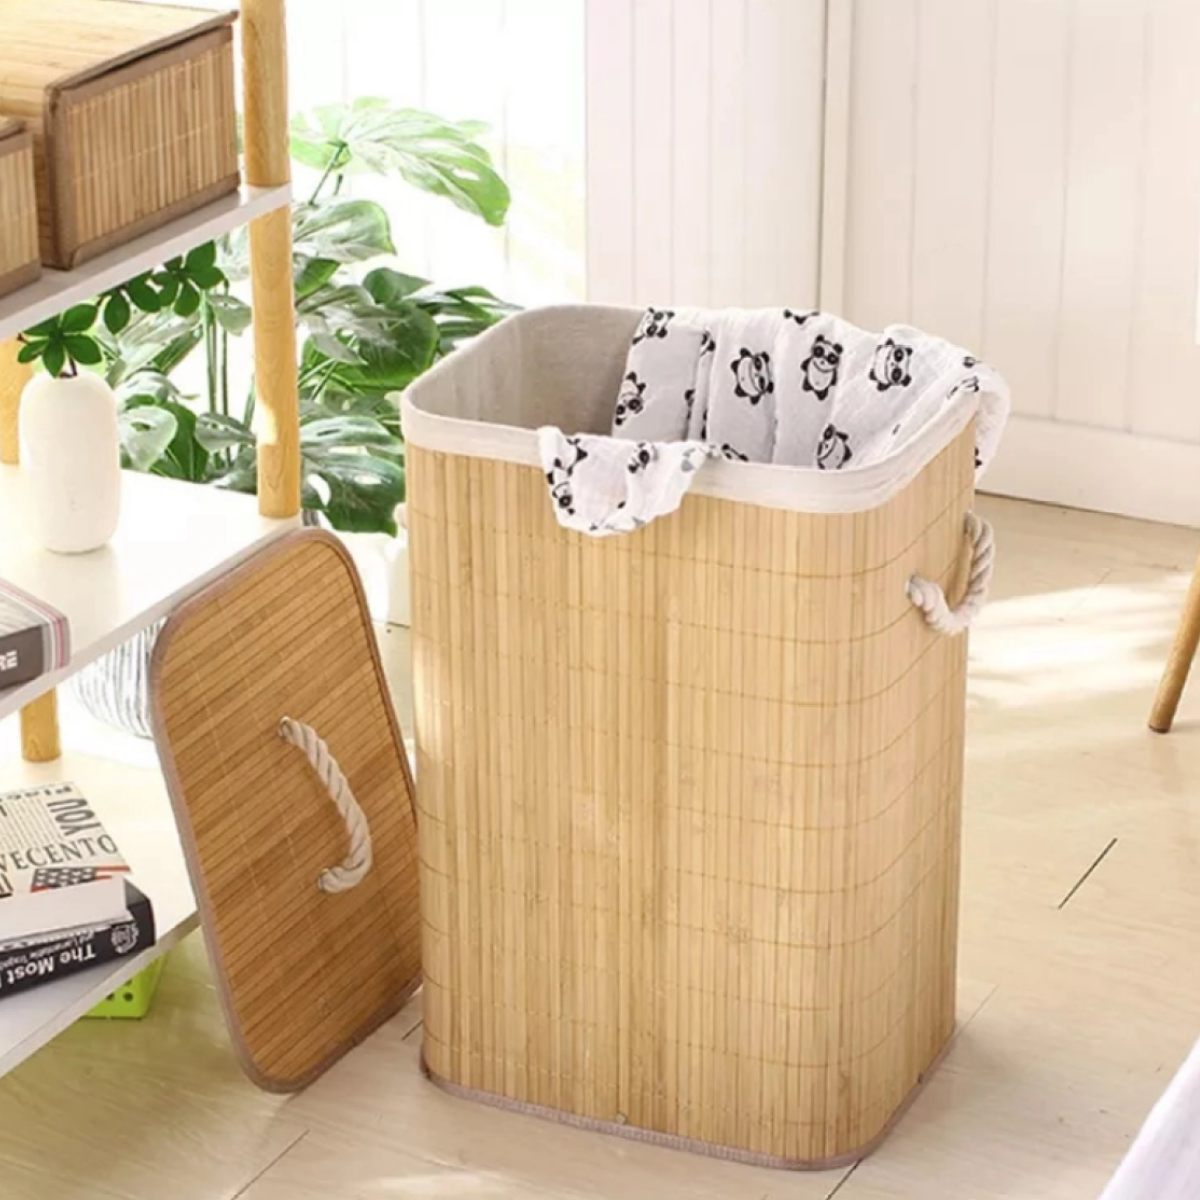 Kit Cestos de Fibra Natural Bambu com Forro Retangular Cesto Forrado Roupa Suja Organização Banheiro - 6